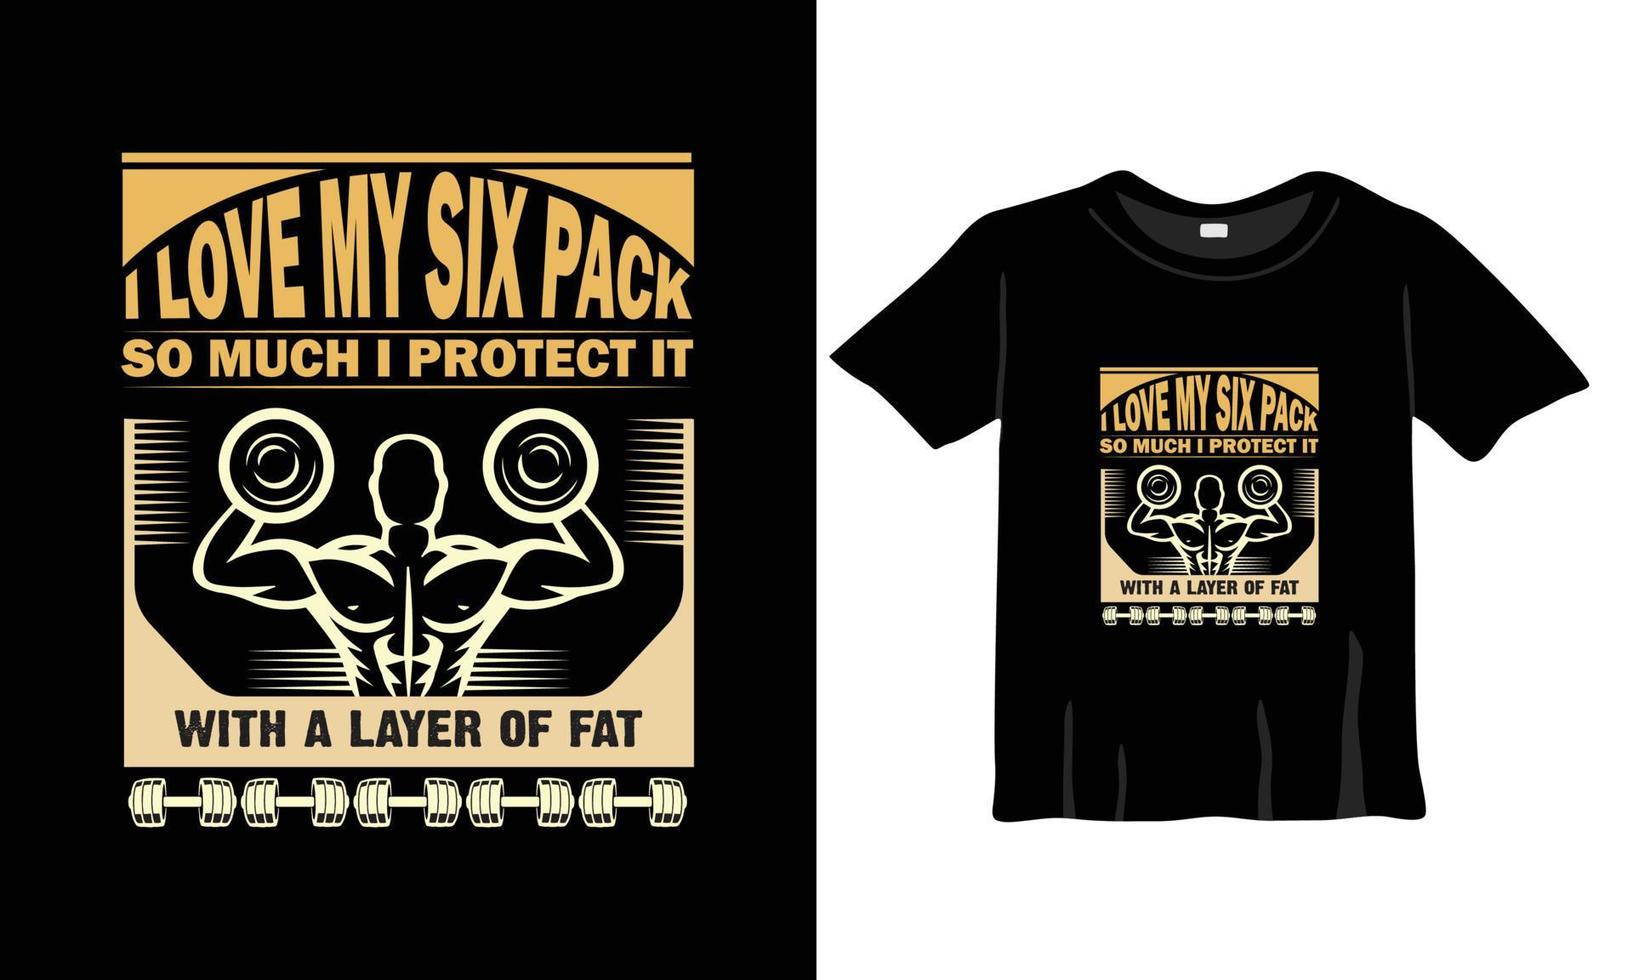 me encanta mi paquete de seis, divertido vector de diseño de camisetas de gimnasio.